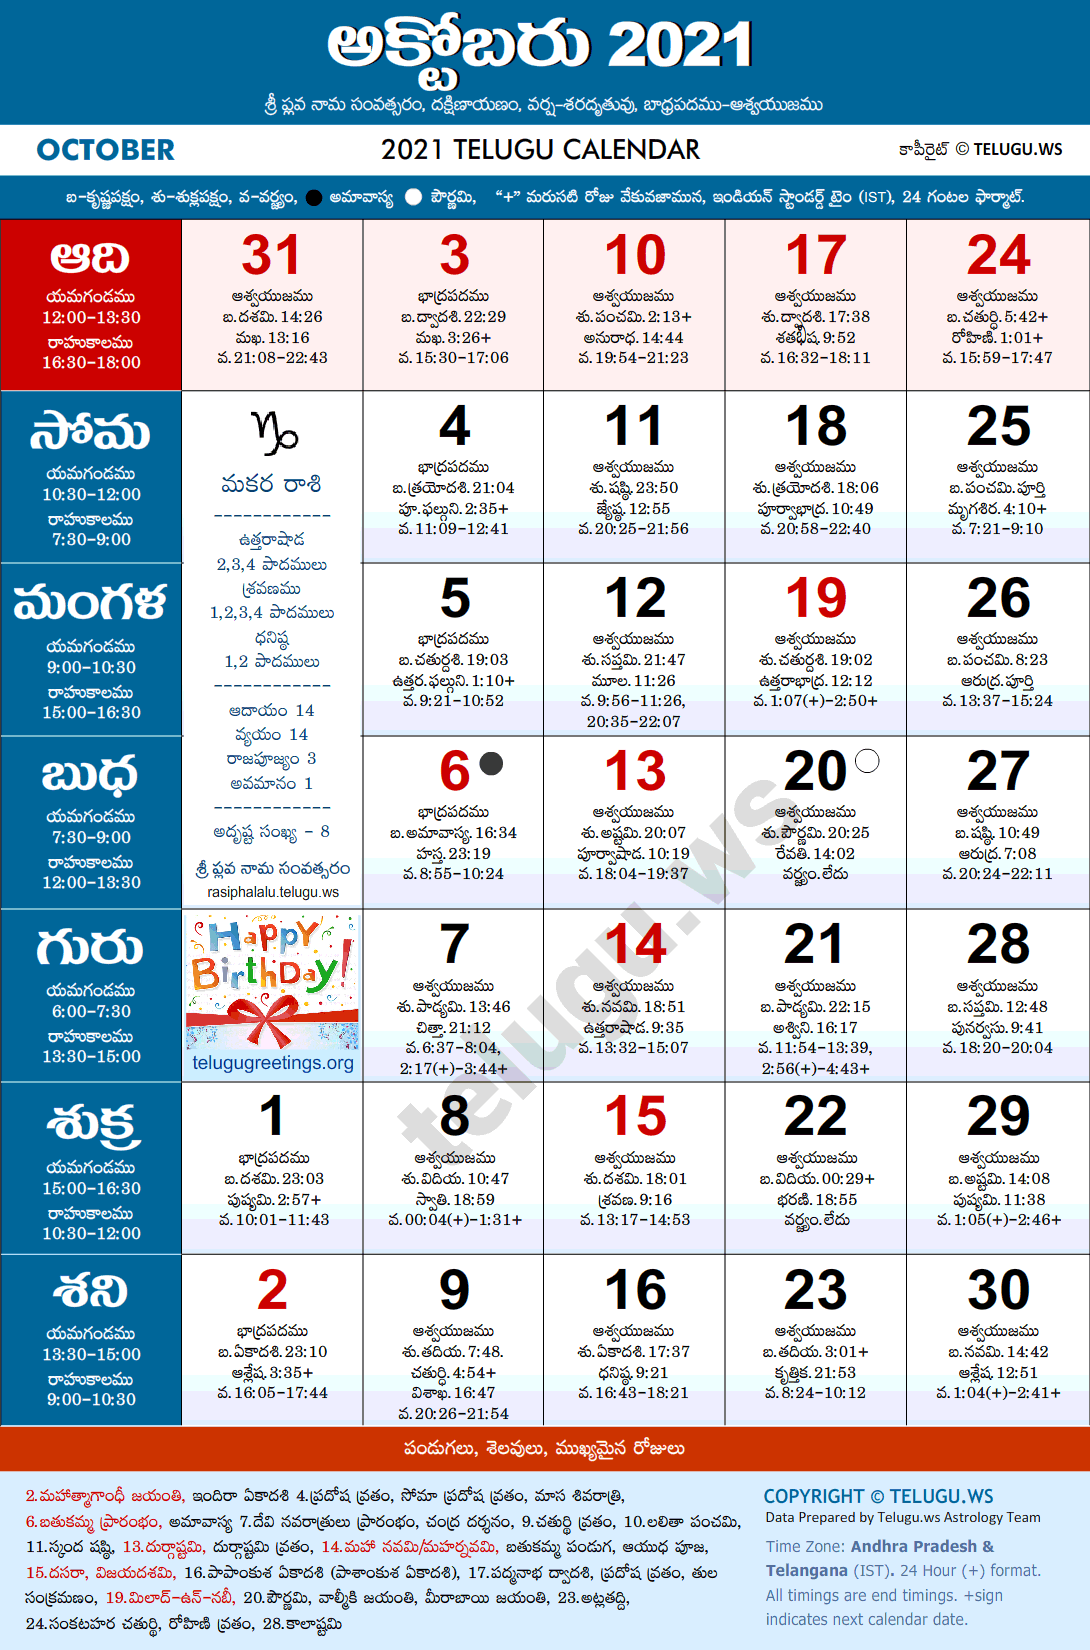 Telugu Calendar 2021 October Festivals and Holidays